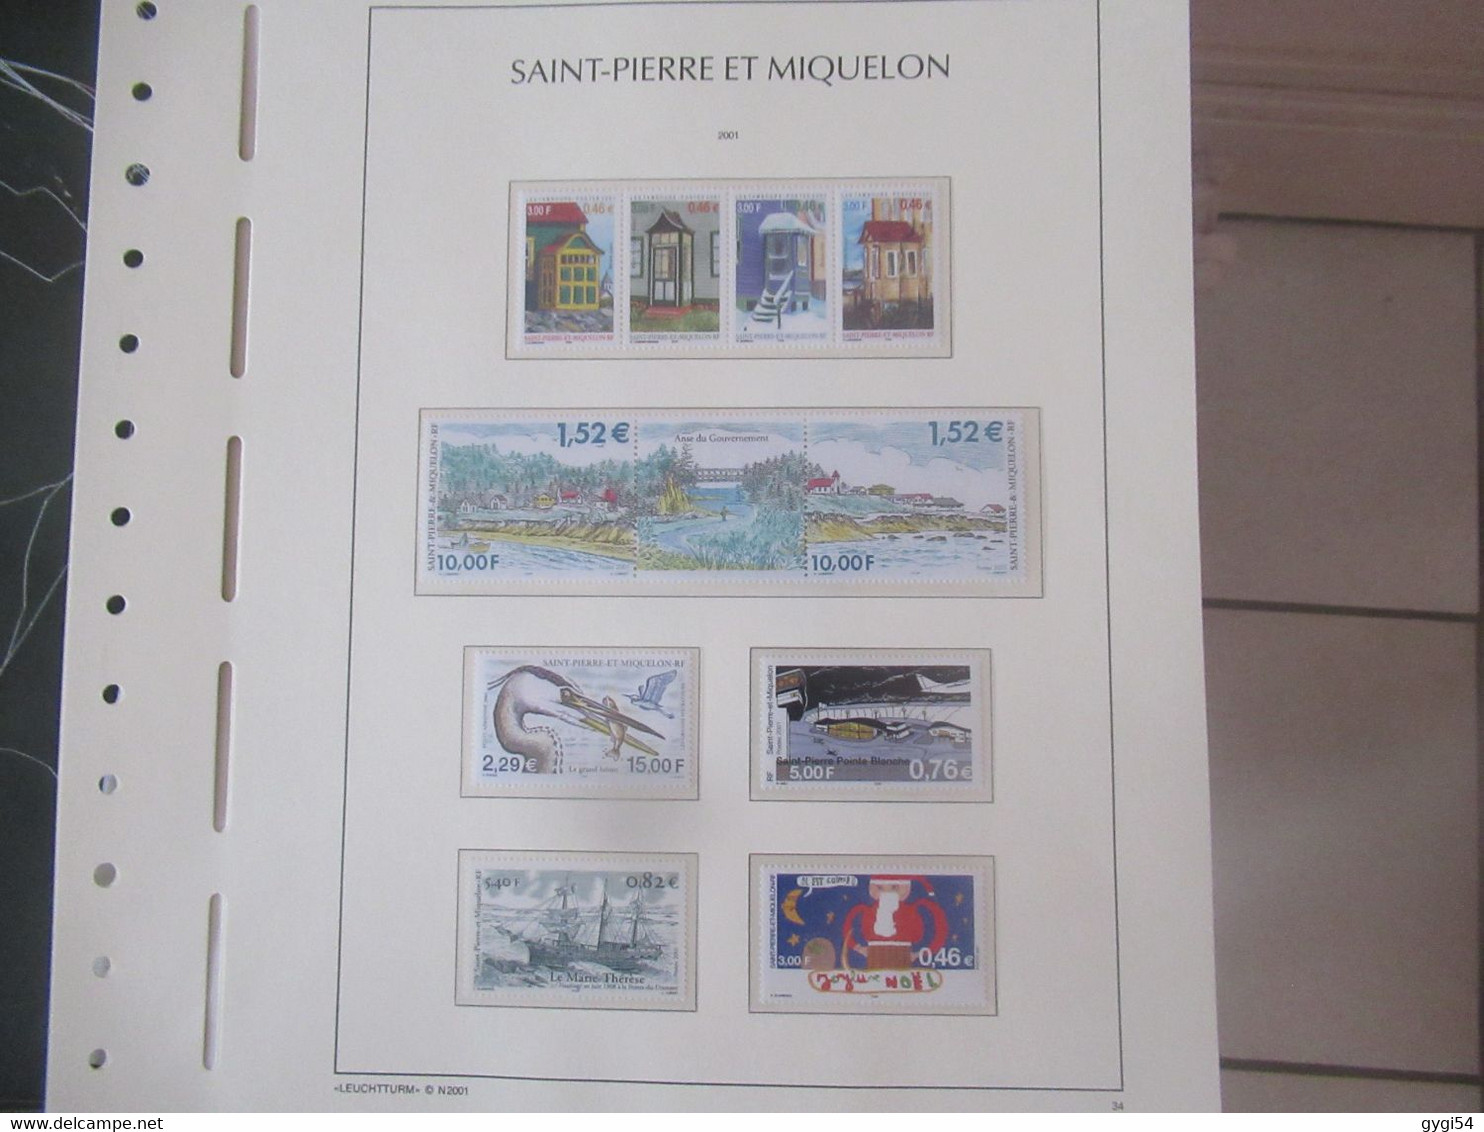 Saint-Pierre Et Miquelon - Année Complète - 2001  MNH - Full Years